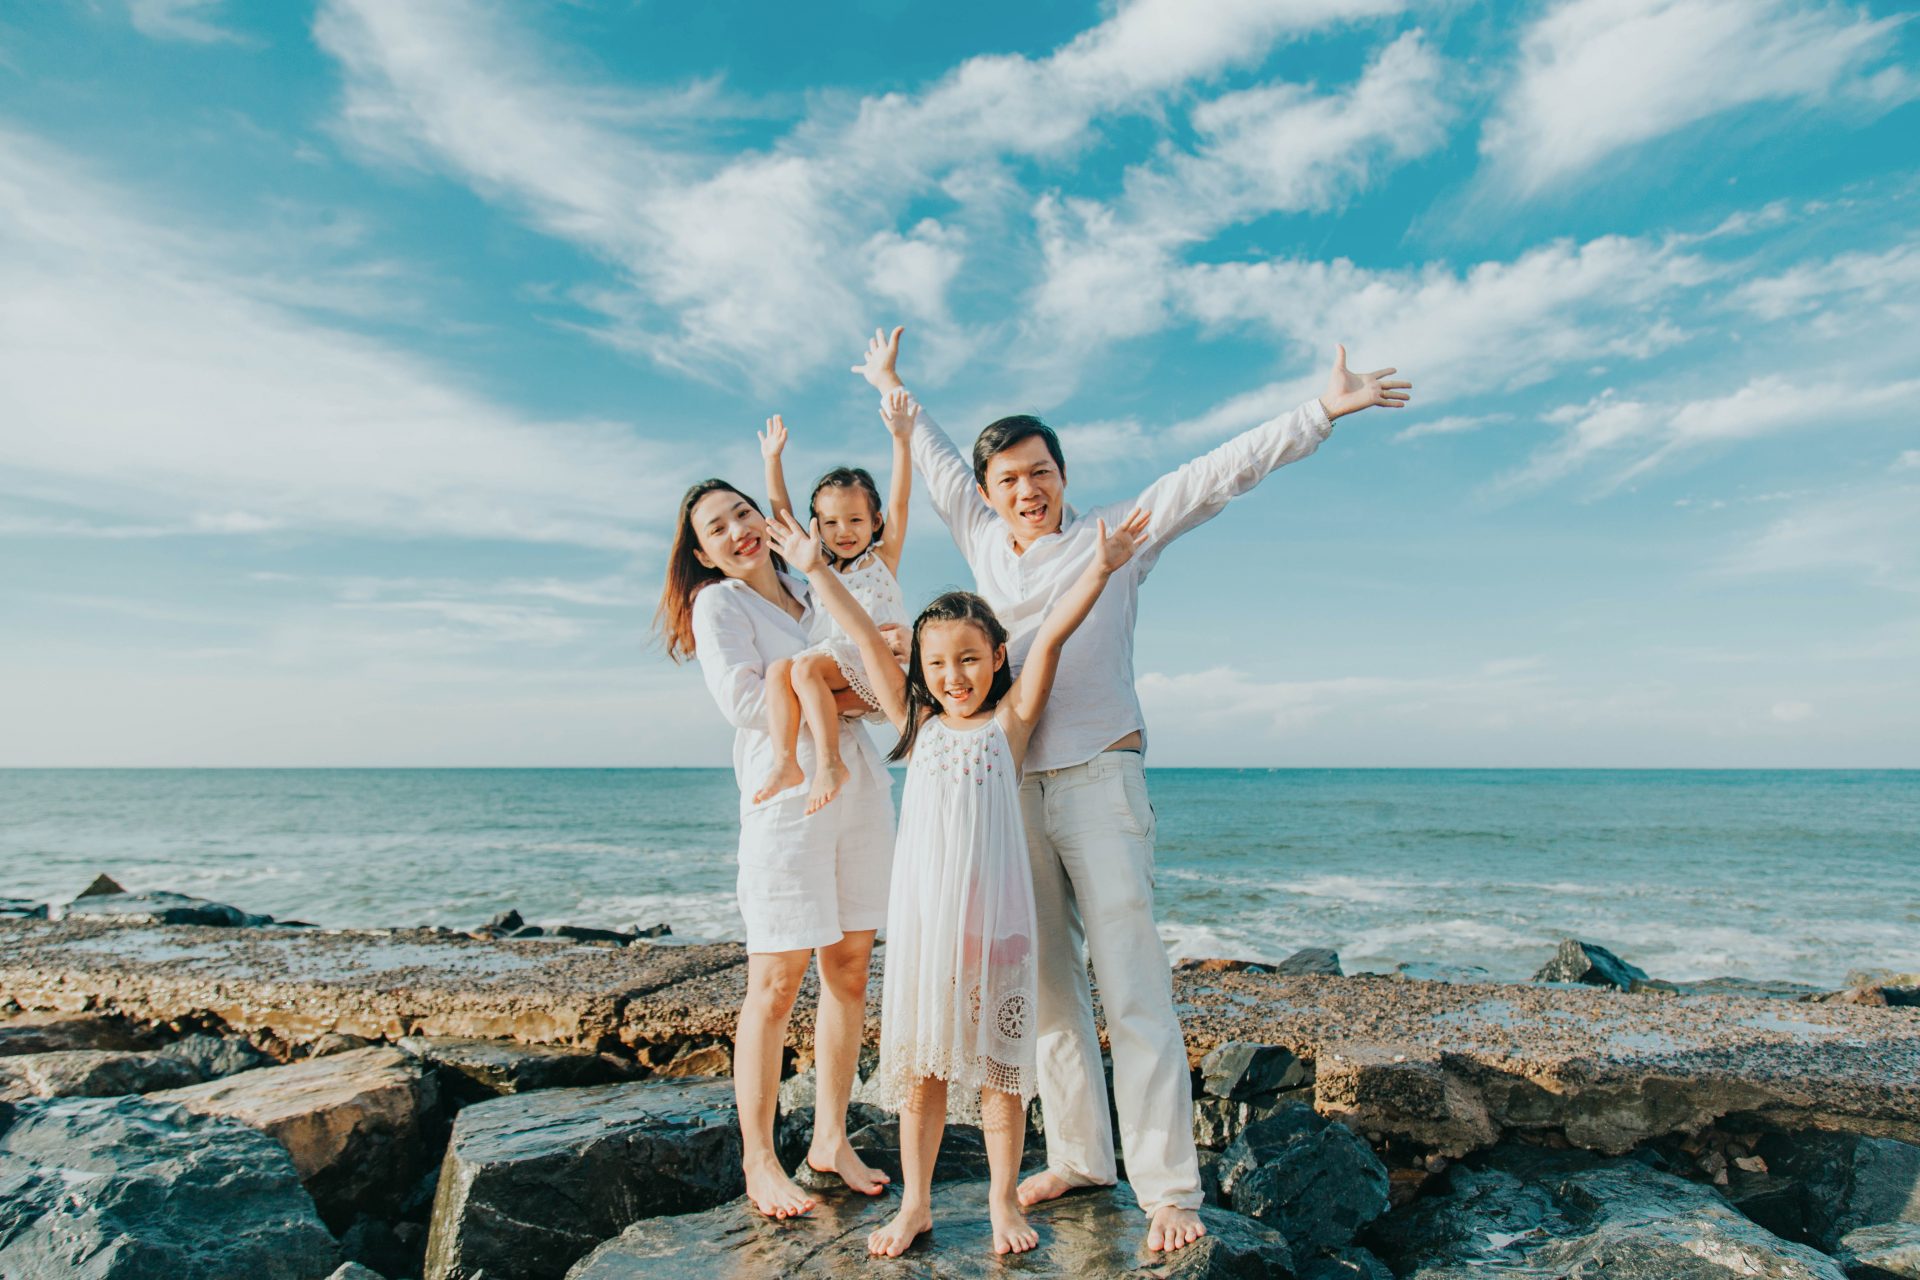 Chụp ảnh gia đình ở biển độc đáo: Không gian hồng vừa xinh, vừa đẹp, trong lành của đại dương xanh sẽ giúp cho bức hình gia đình của bạn trở nên thật ấn tượng và đẹp đến ngỡ ngàng. Chụp ảnh gia đình ở bãi biển, mới lạ, độc đáo sẽ là điểm nhấn không thể bỏ qua trong album gia đình của bạn!